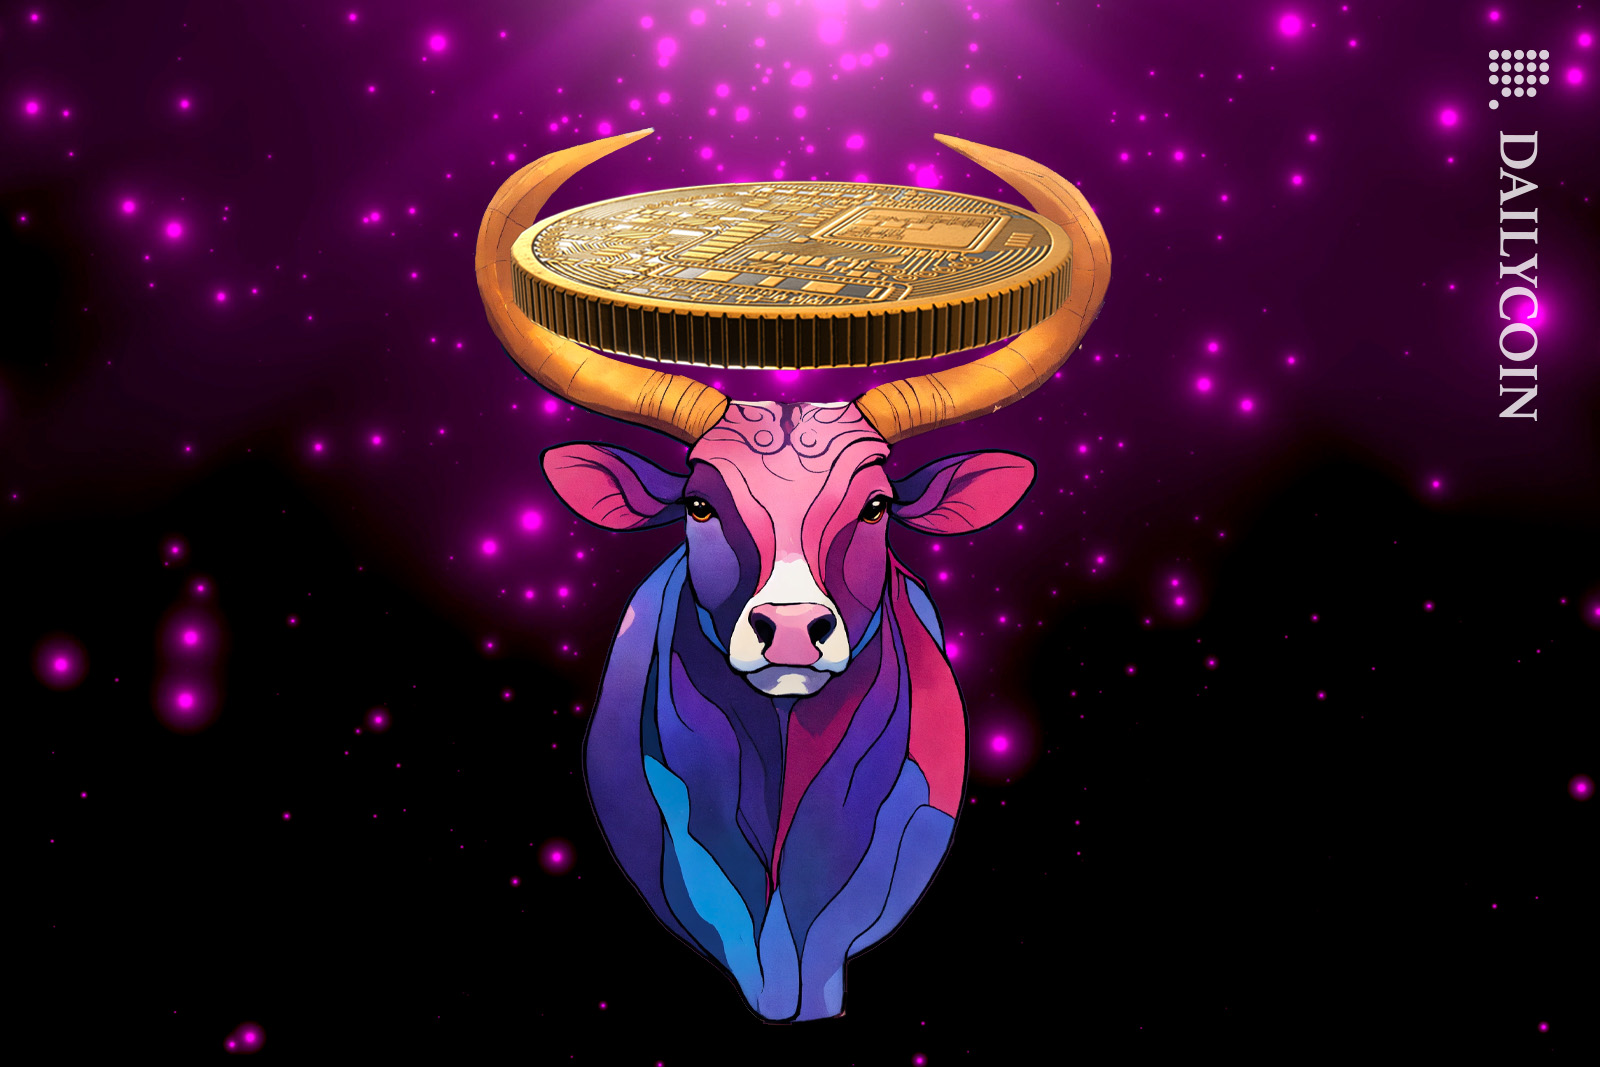 Taurus bull holding a giant crypto coin.